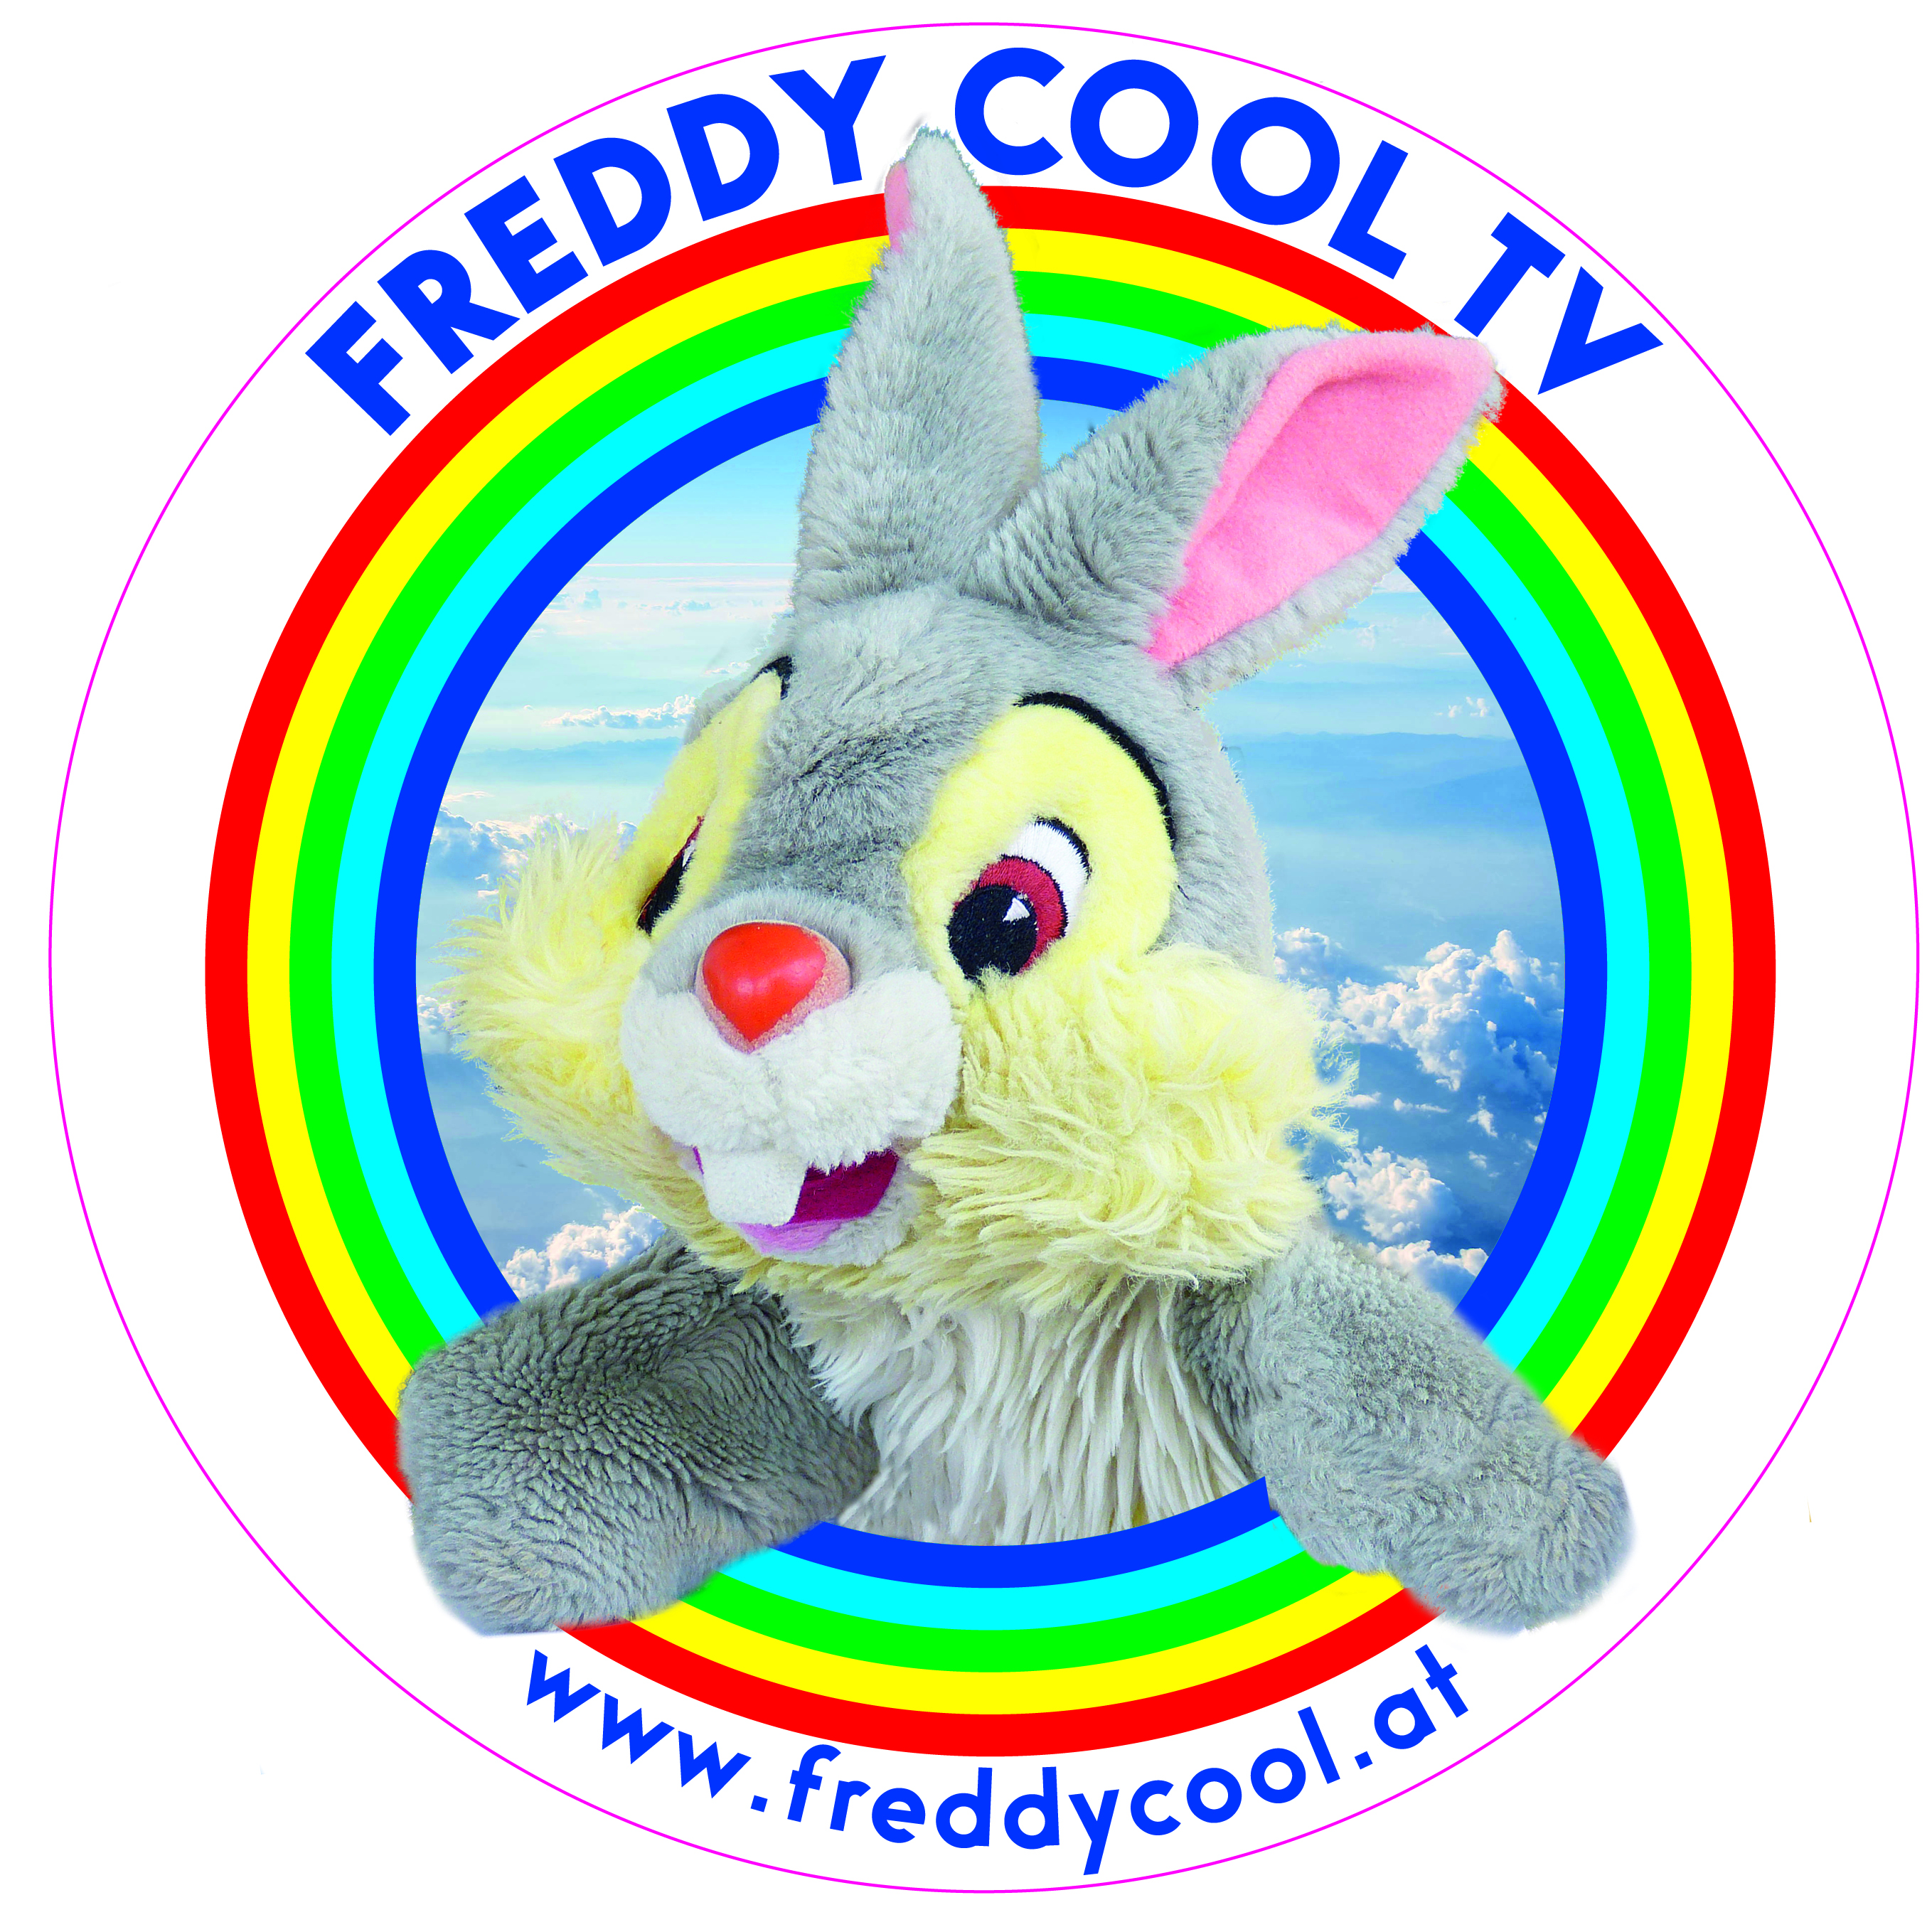 Freddy Cool TV Logo